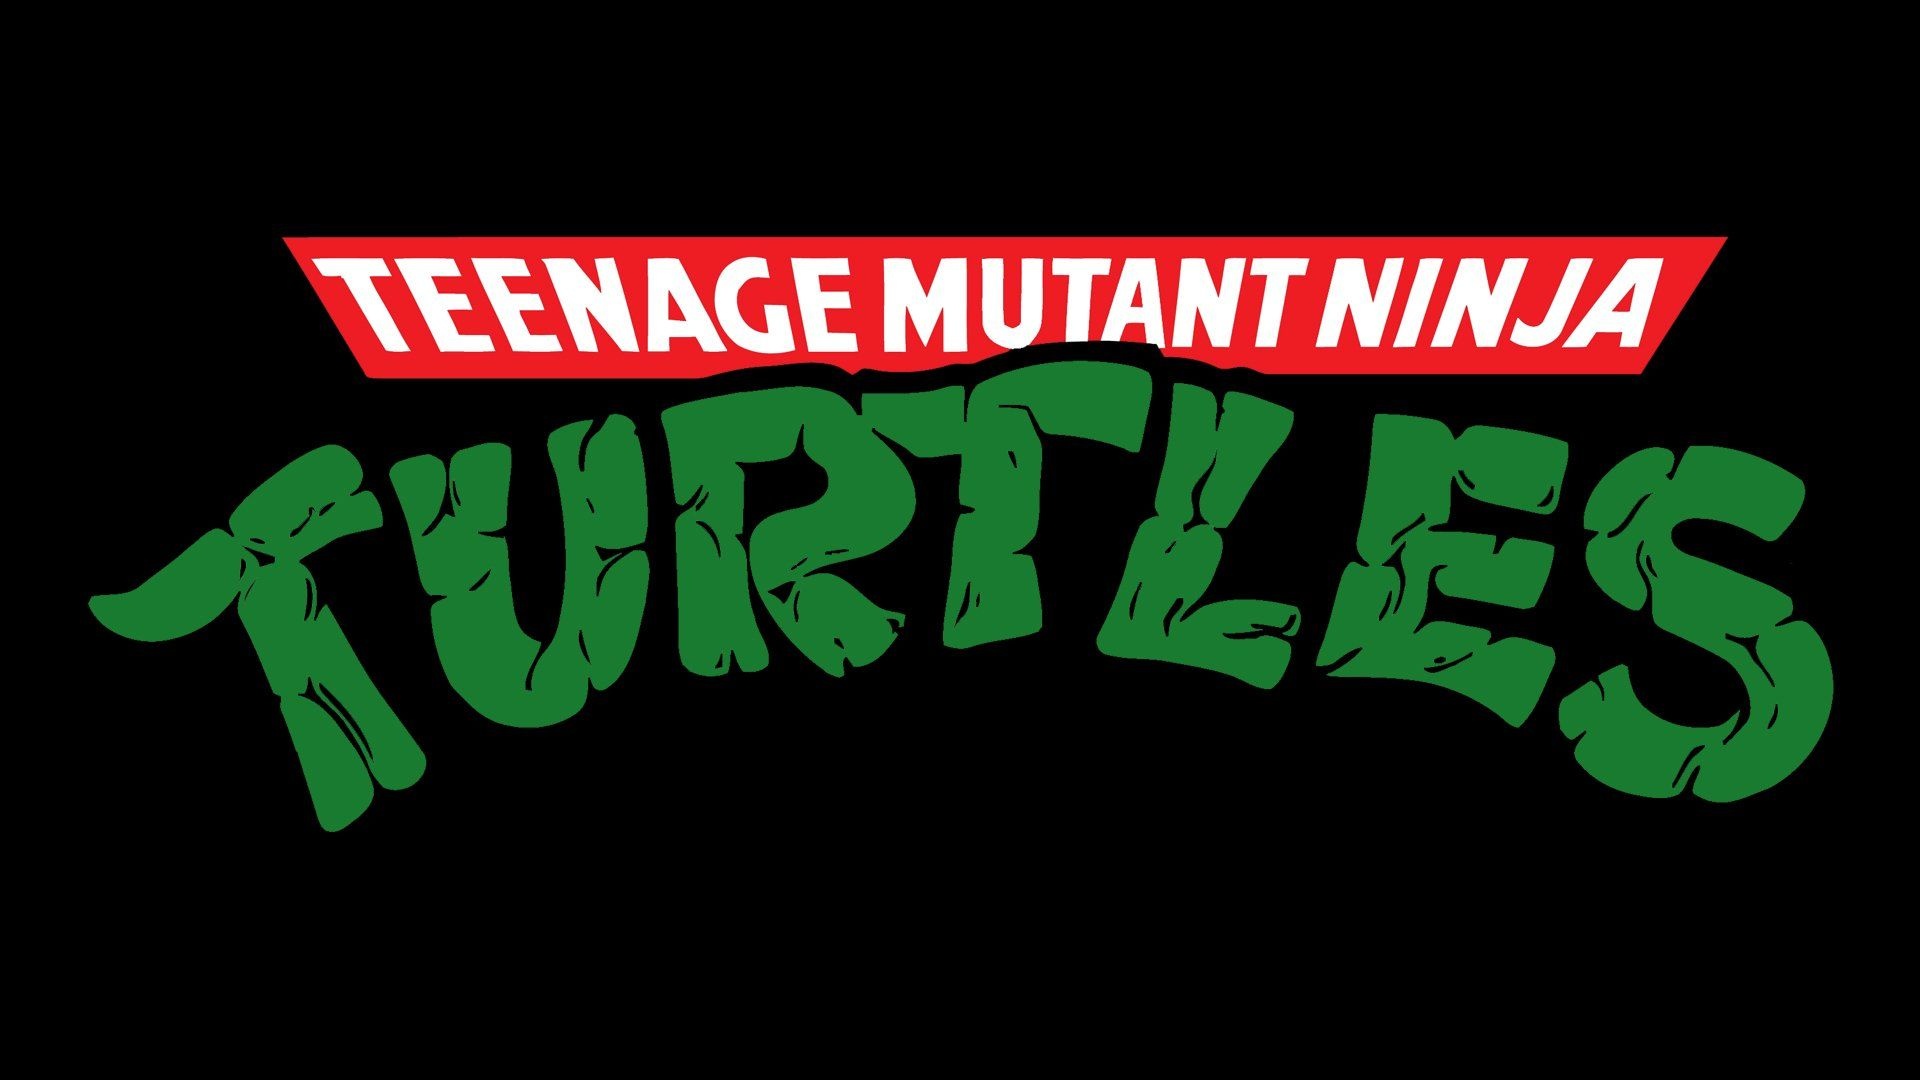 Mutant Ninja Turtles, Cartoon ninja turtles, Ninja turtles images, Turtle logo, 1920x1080 Full HD Desktop